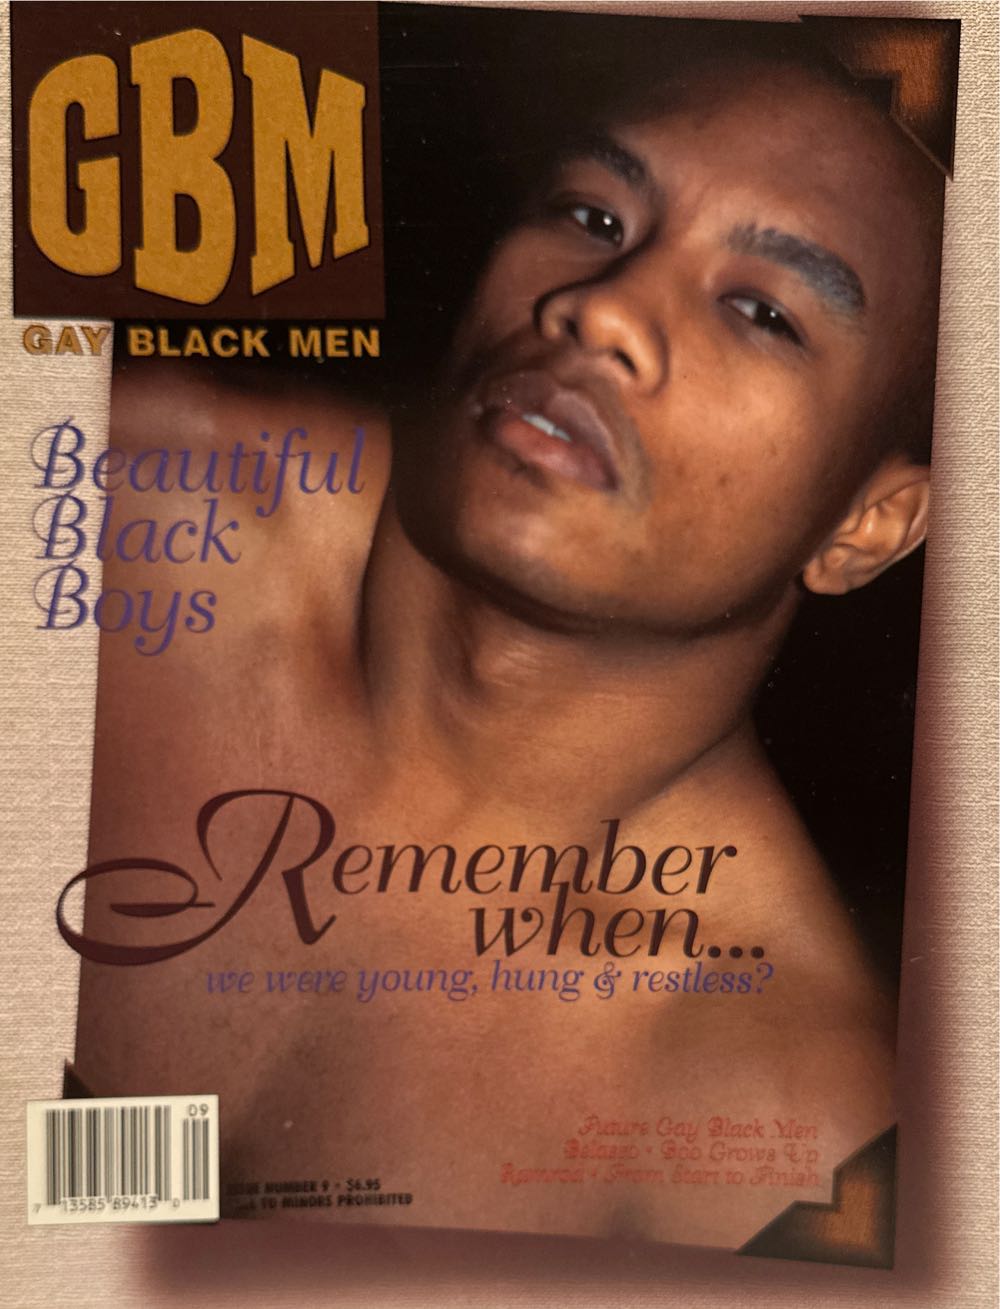 Gay Black Male No.9  (November) magazine collectible - Main Image 1